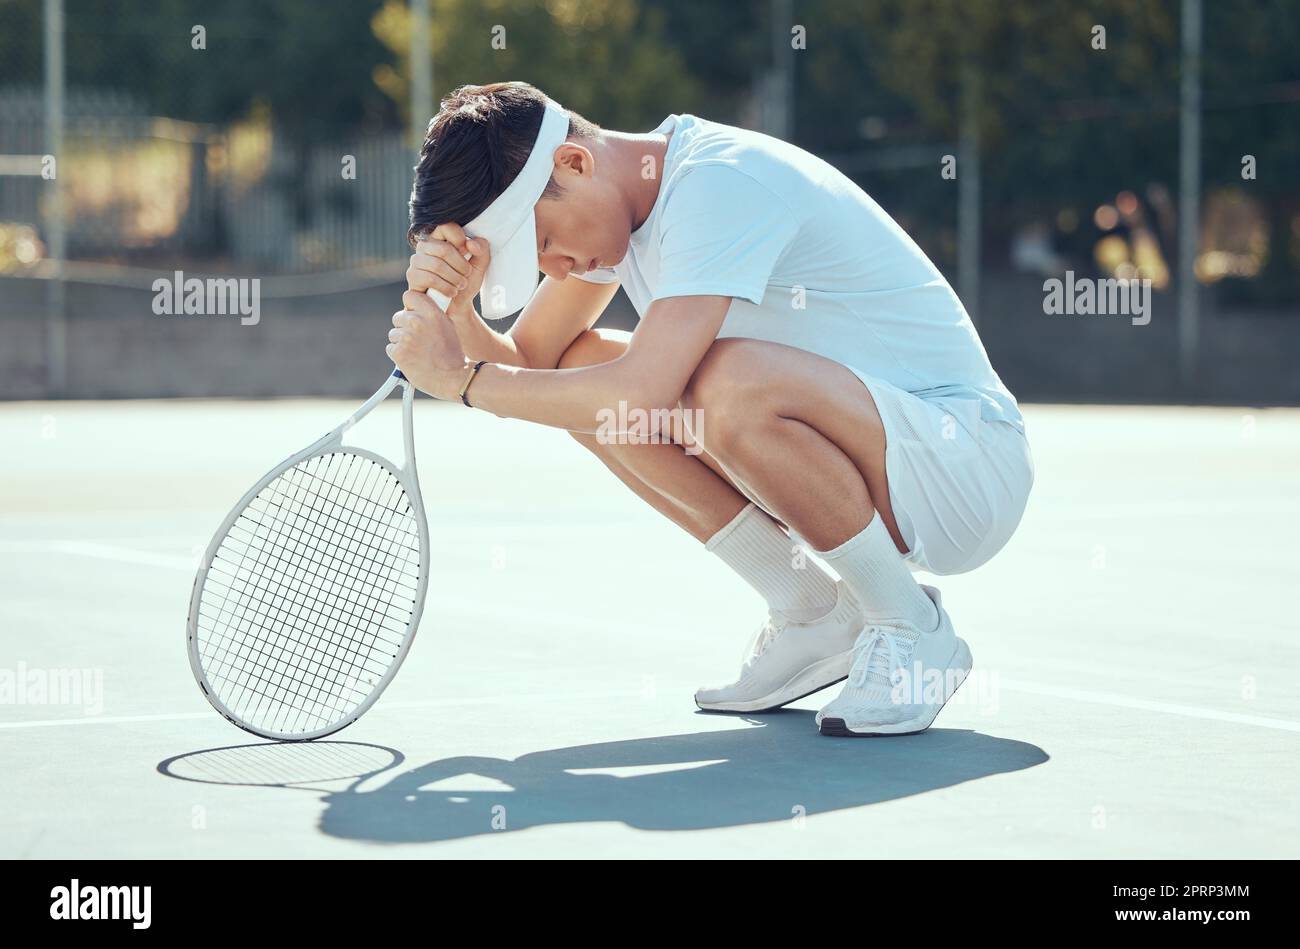 Erreur de tennis, l'homme se concentrer et prier position d'un athlète de Chine triste au sujet des résultats de match de sport. Fitness, entraînement et entraînement sportif d'un joueur de compétition asiatique fort priant sur le terrain d'exercice Banque D'Images